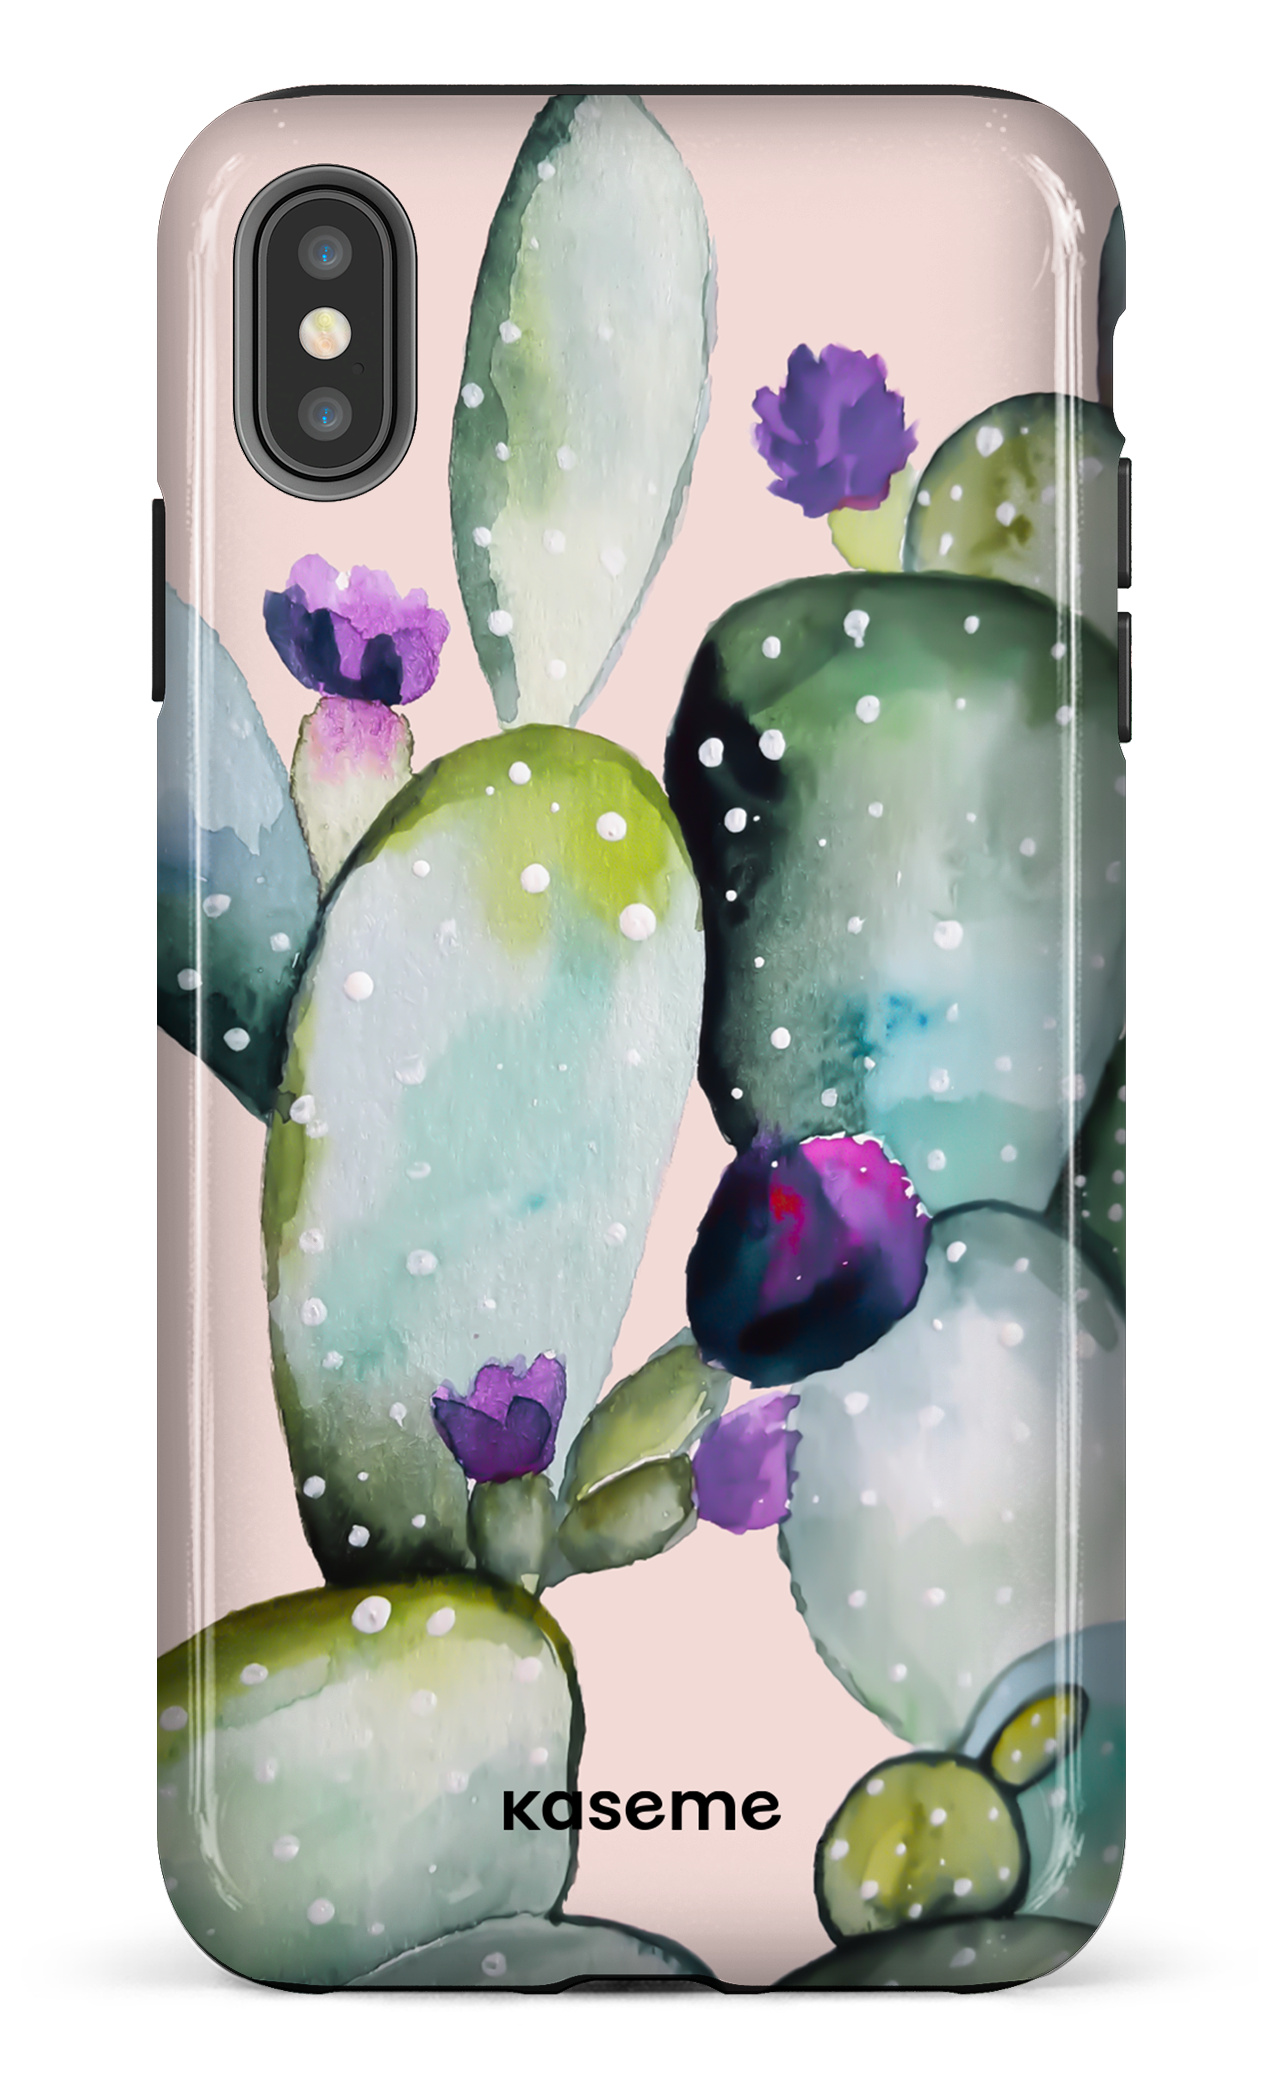 Cactus Flower - iPhone XS Max